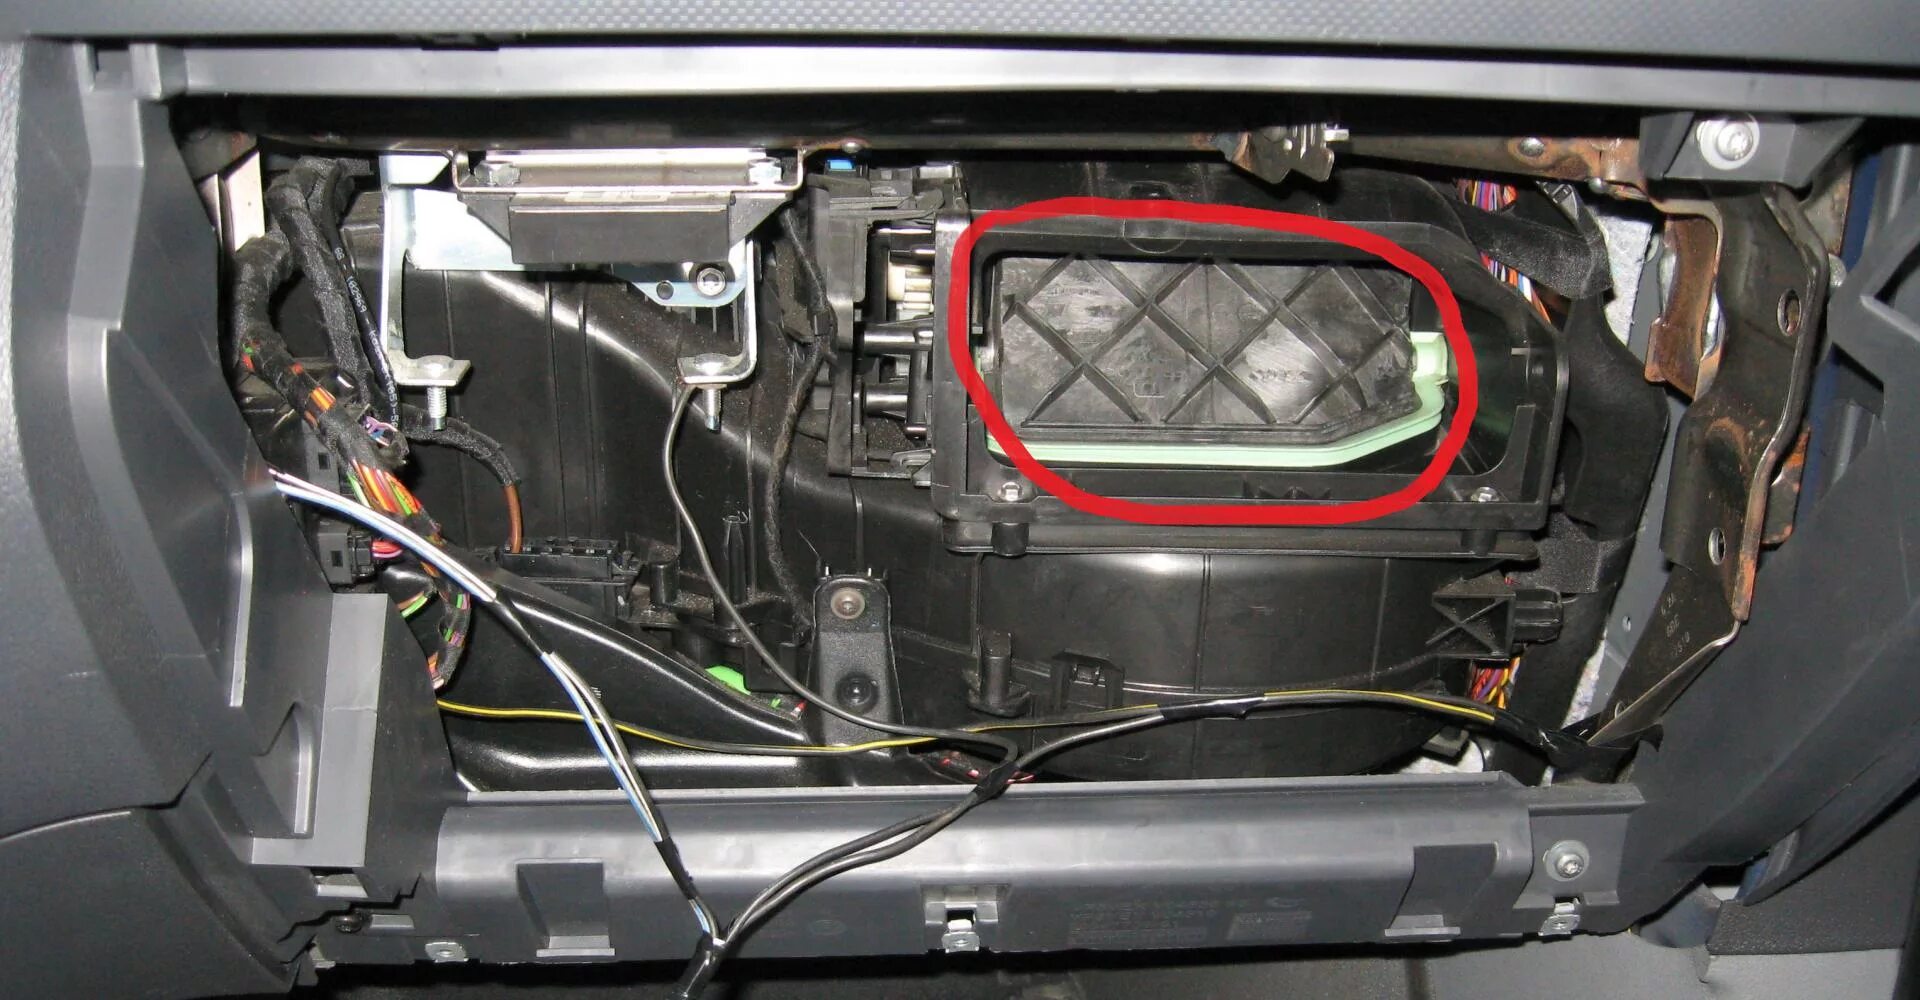 Заслонка забора воздуха. Заслонка вентиляции VW Passat b6. Заслонки климат контроля Фольксваген б6. Форд фокус 2 заслонка печки тепло холод. Ford Focus 2 климат контроль заслонка.